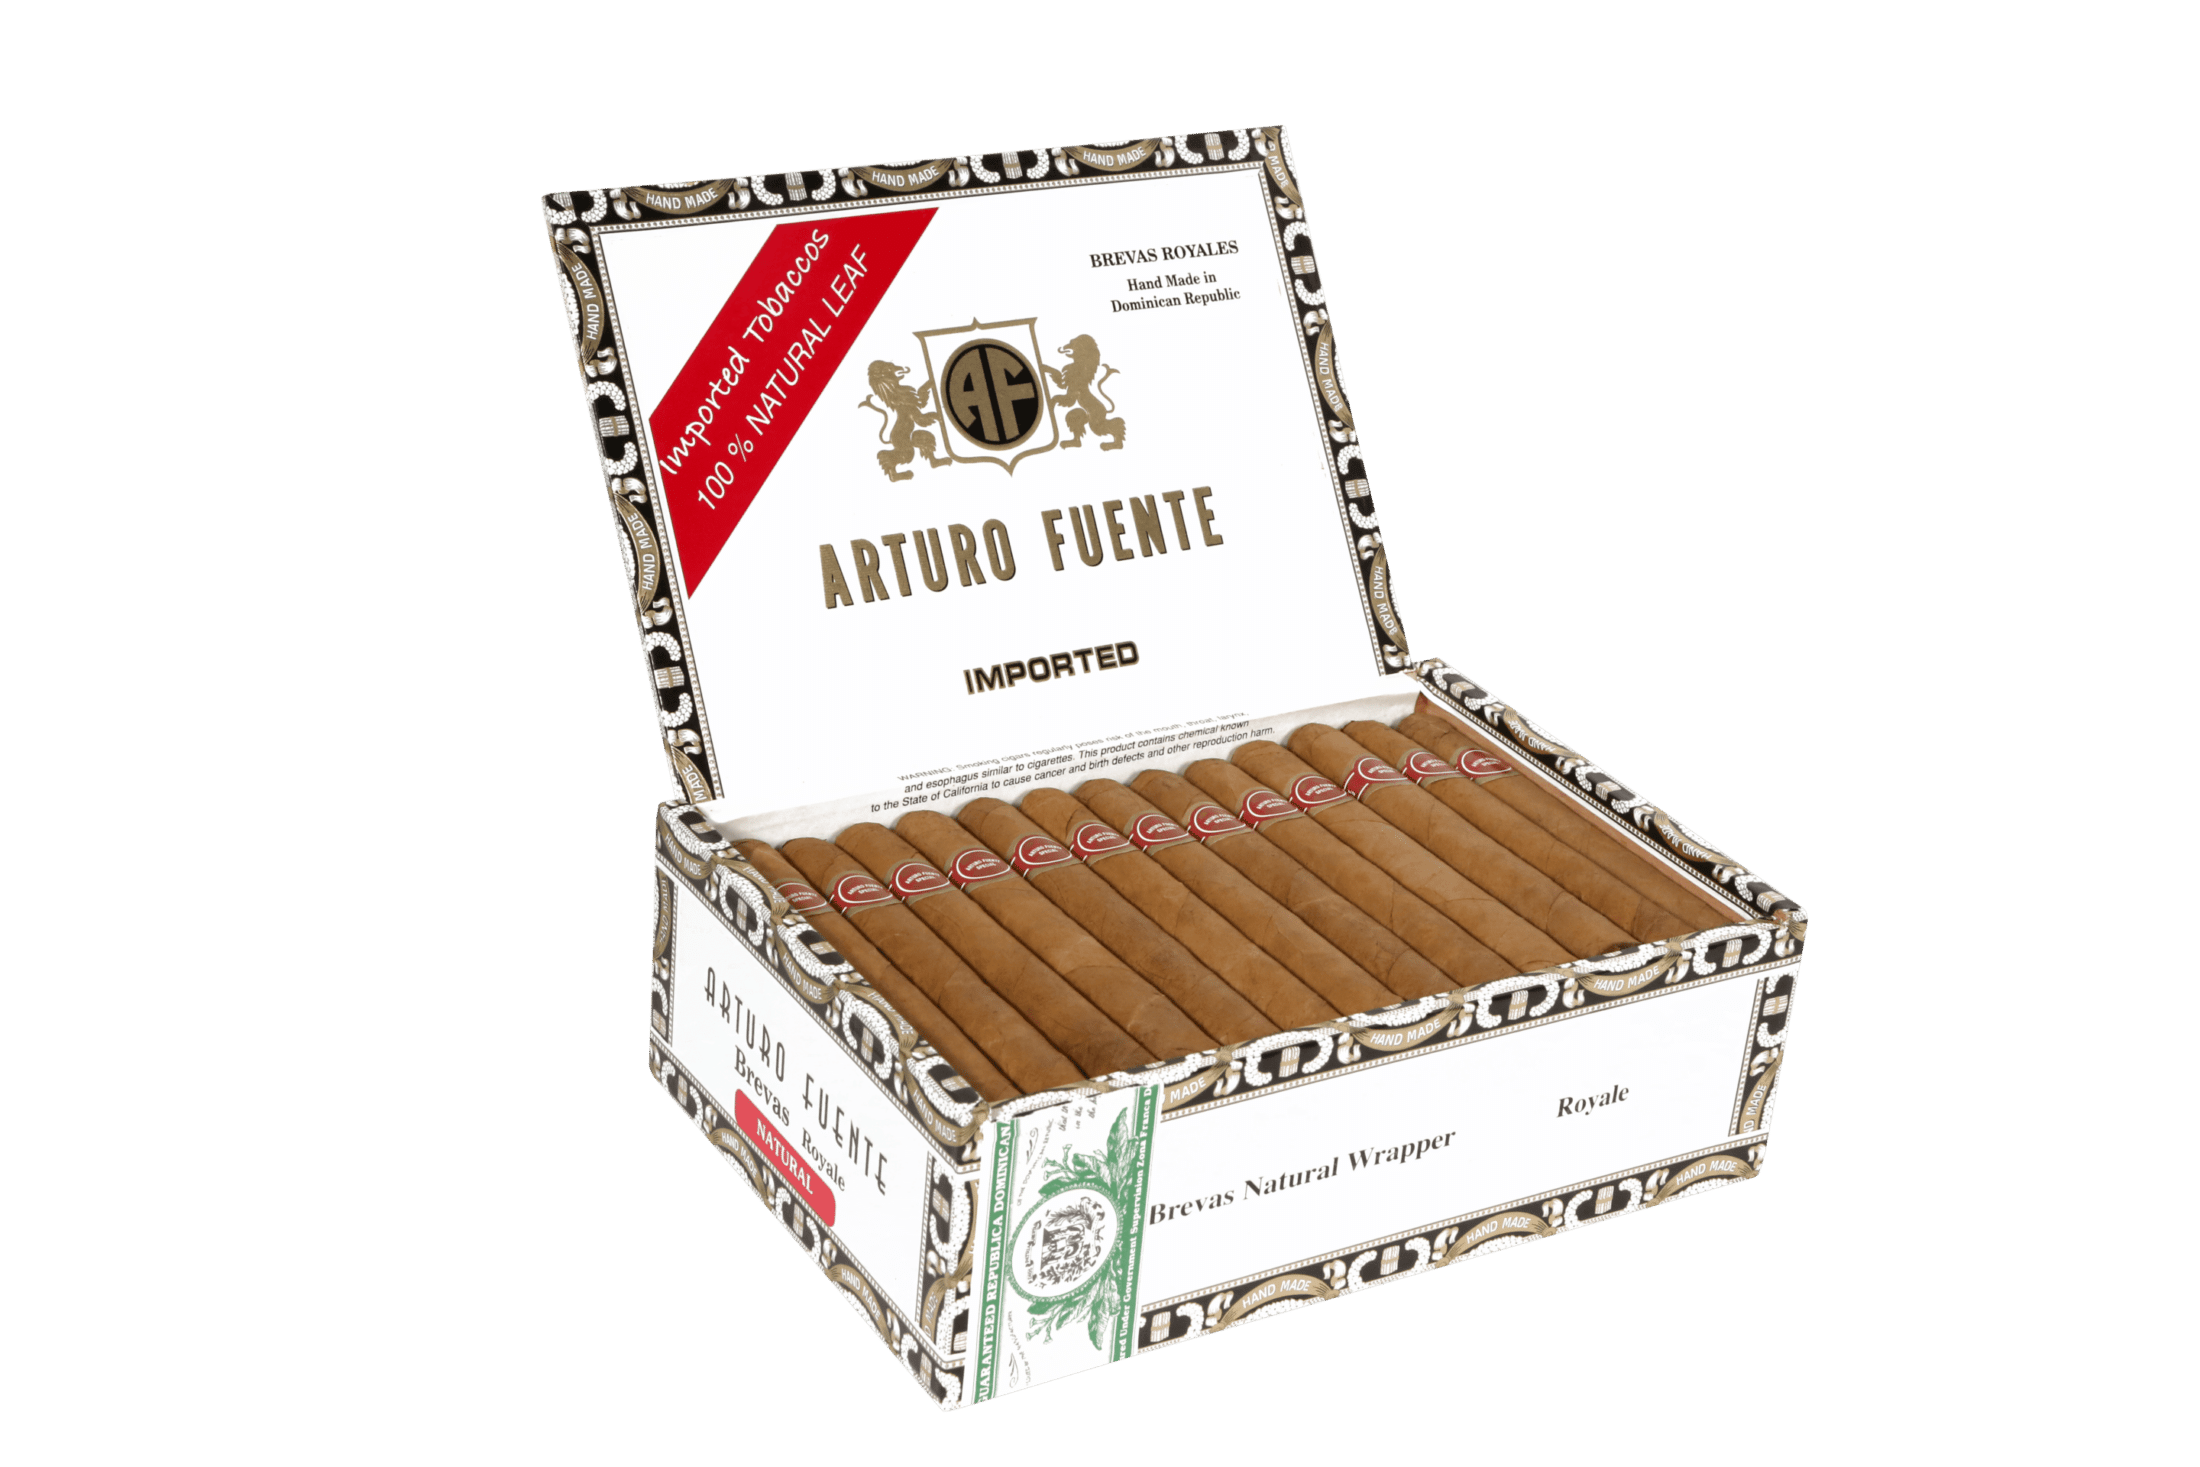 Open box of 50 count Arturo Fuente Brevas Royales cigars